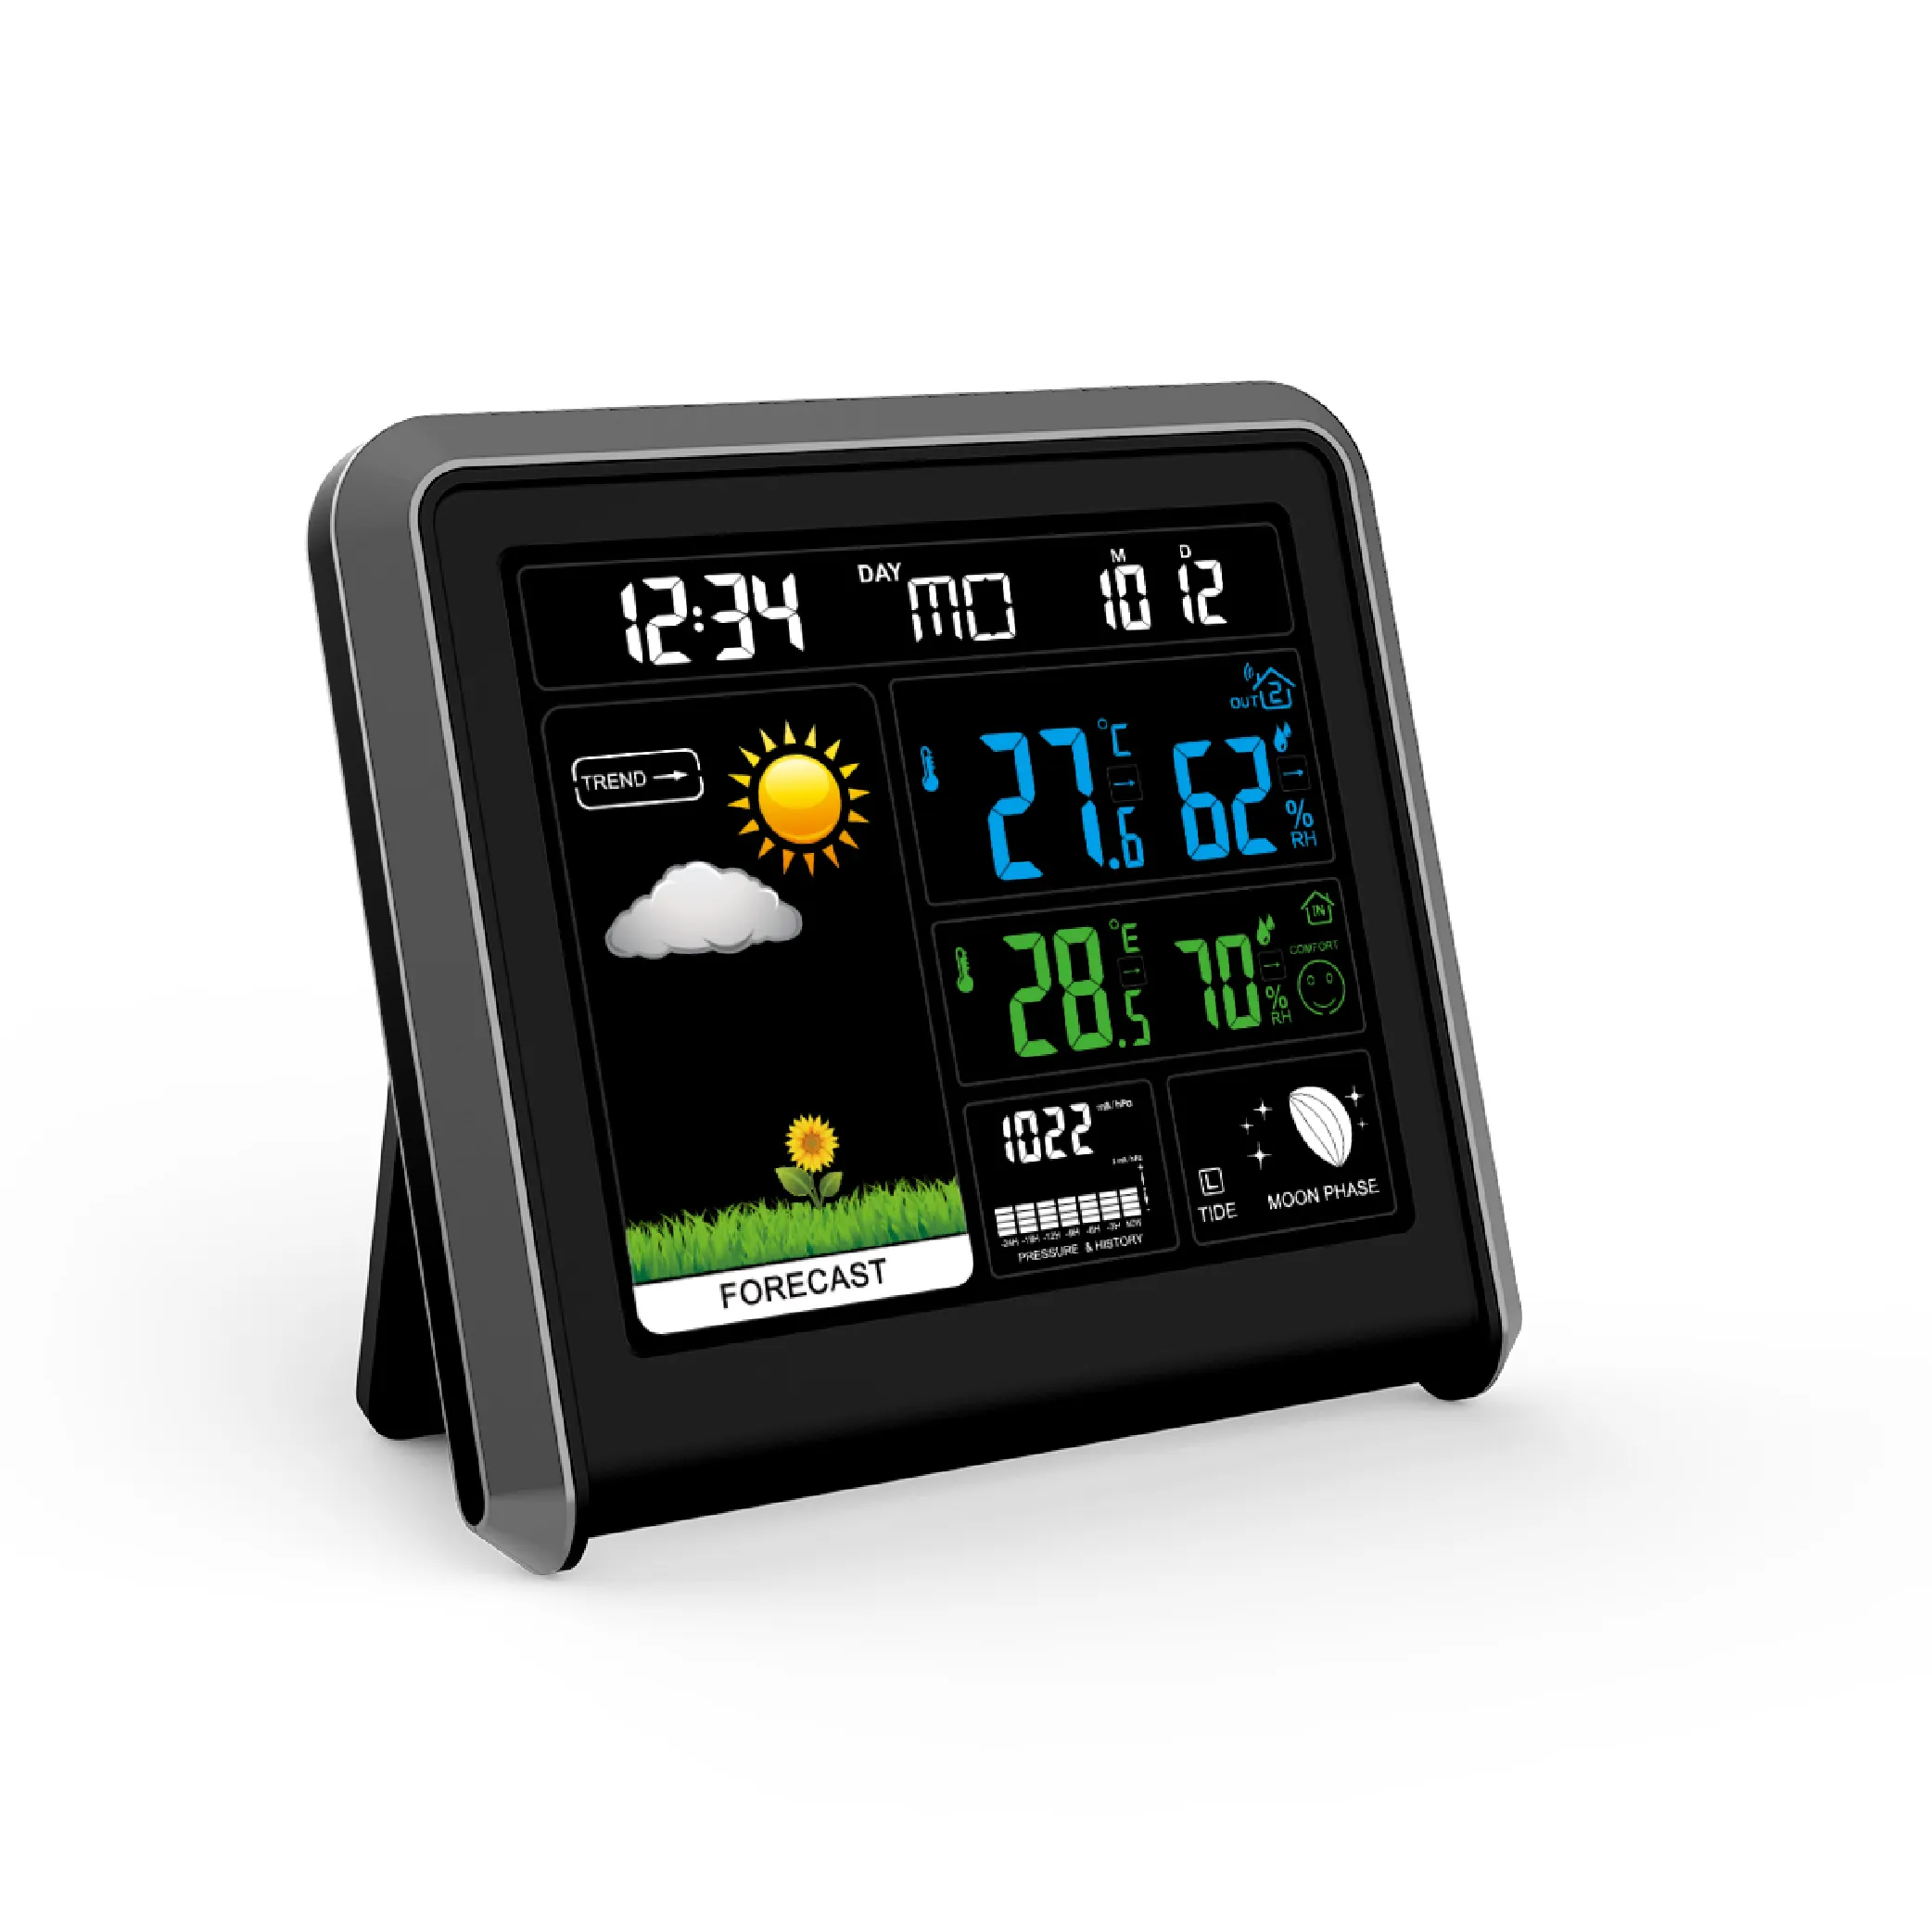 Station météo sans fil avec horloge et capteur extérieur, thermomètre baromètre, prévisions, horloge numérique multi-fonctions,